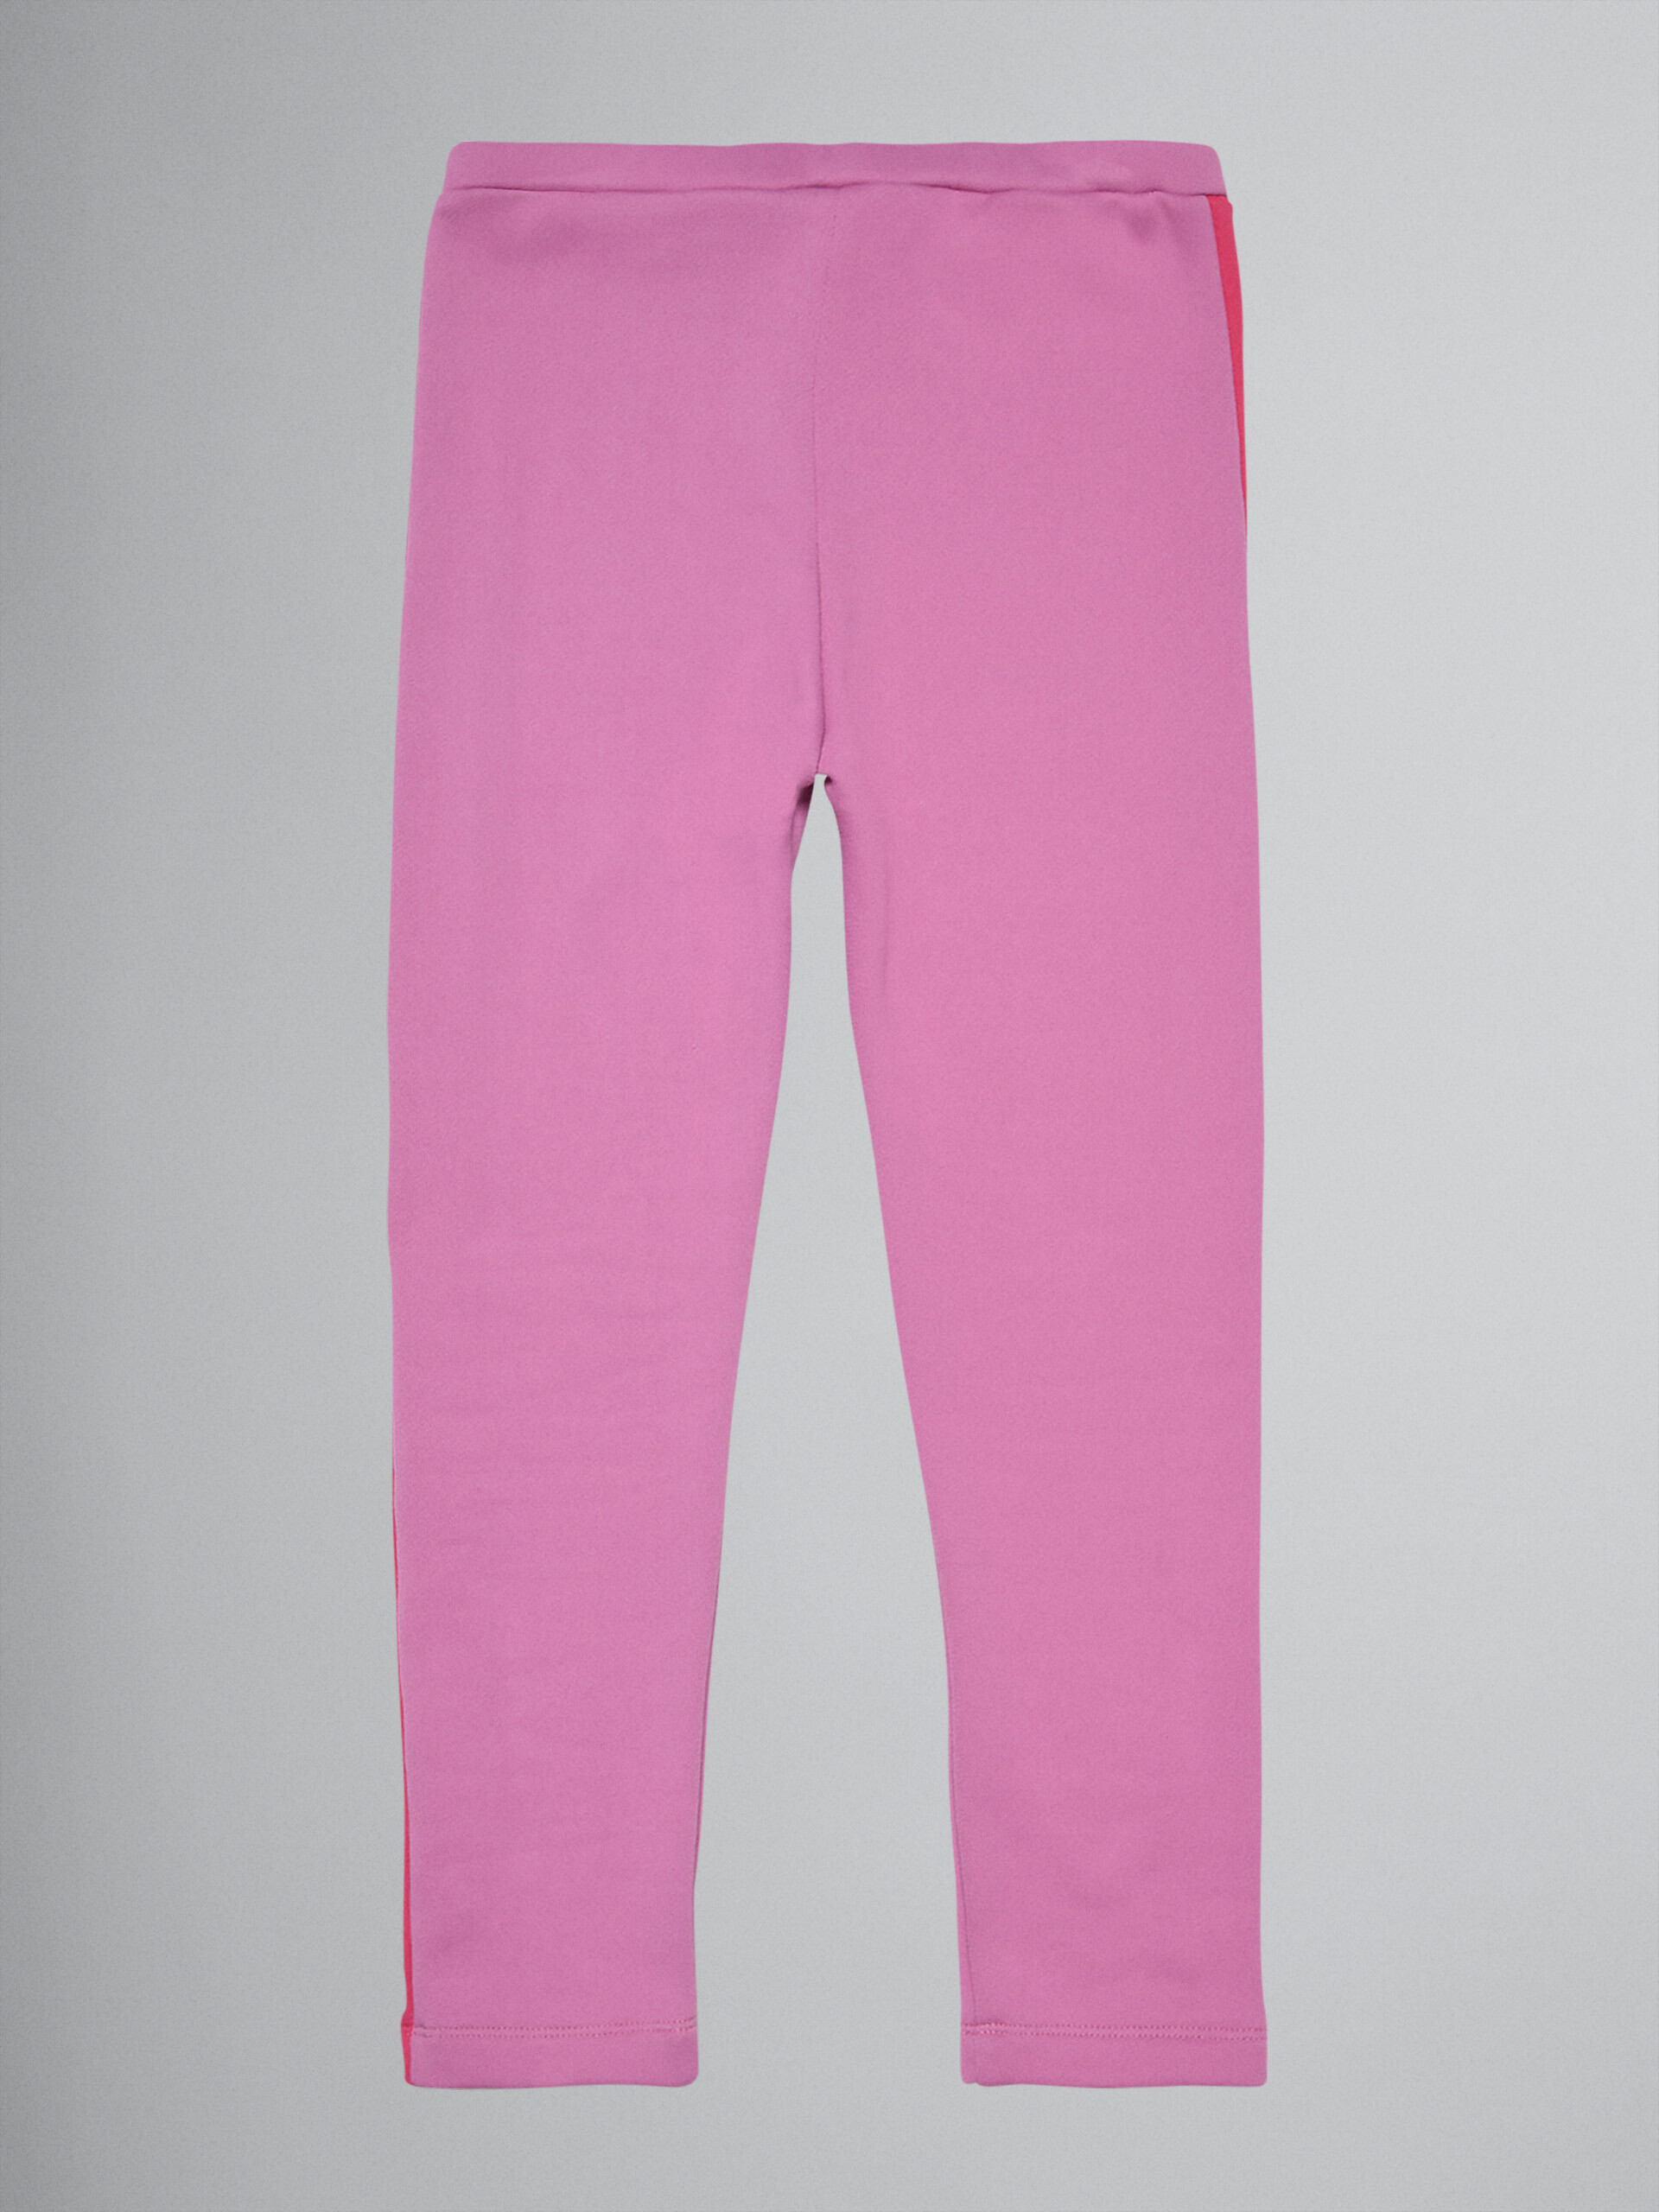 Laufhose aus pinkfarbener technischer Baumwolle - Hosen - Image 2